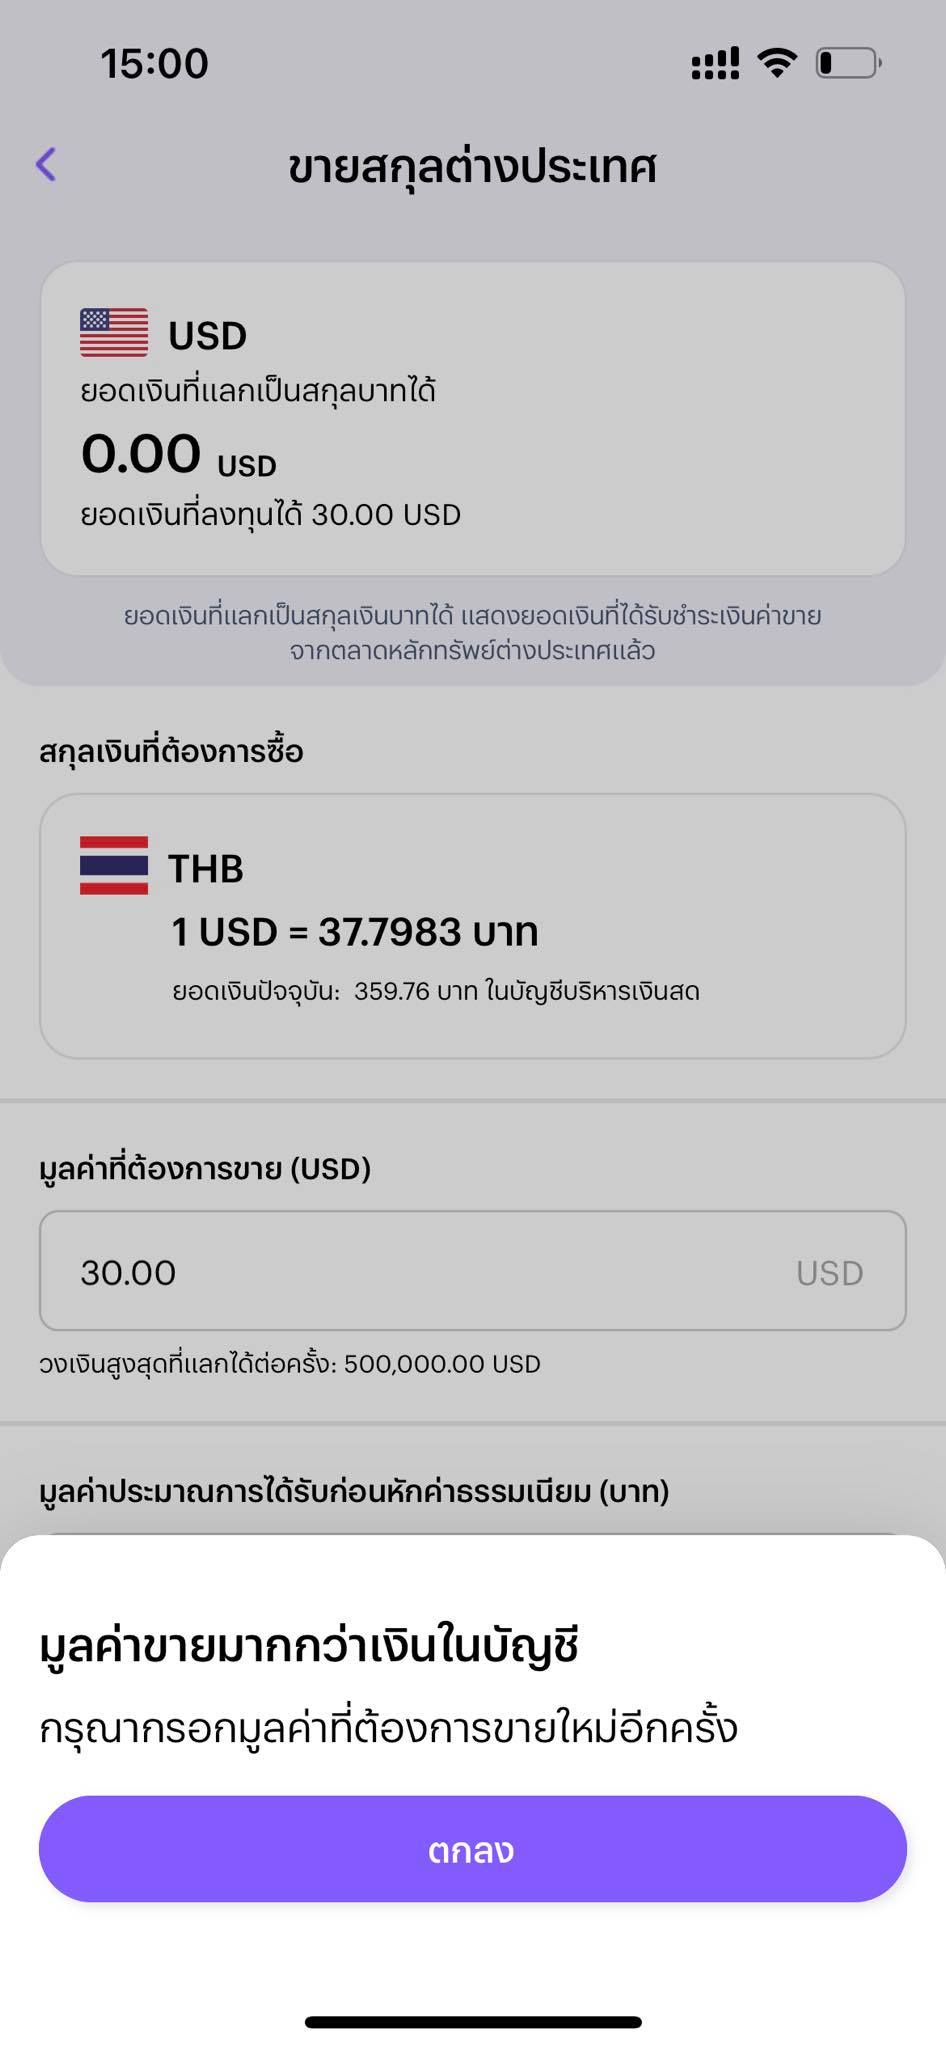 ทำงานต่างประเทศ (ดูไบ Uae) แลกเงินไทยกันยังไง 